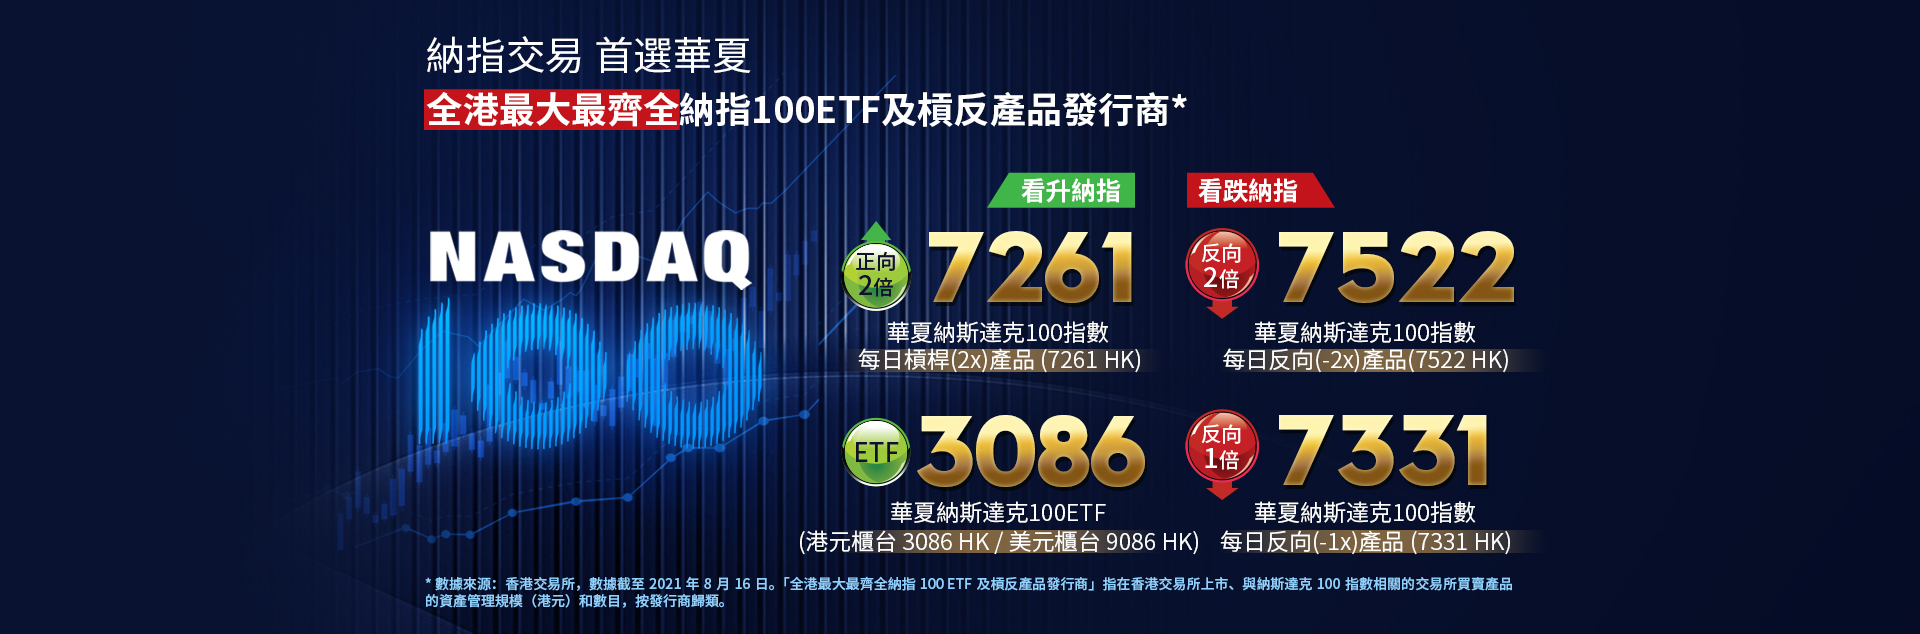 納指交易 首選華夏 全港最大最齊全納指 100ETF及槓反產品發行商